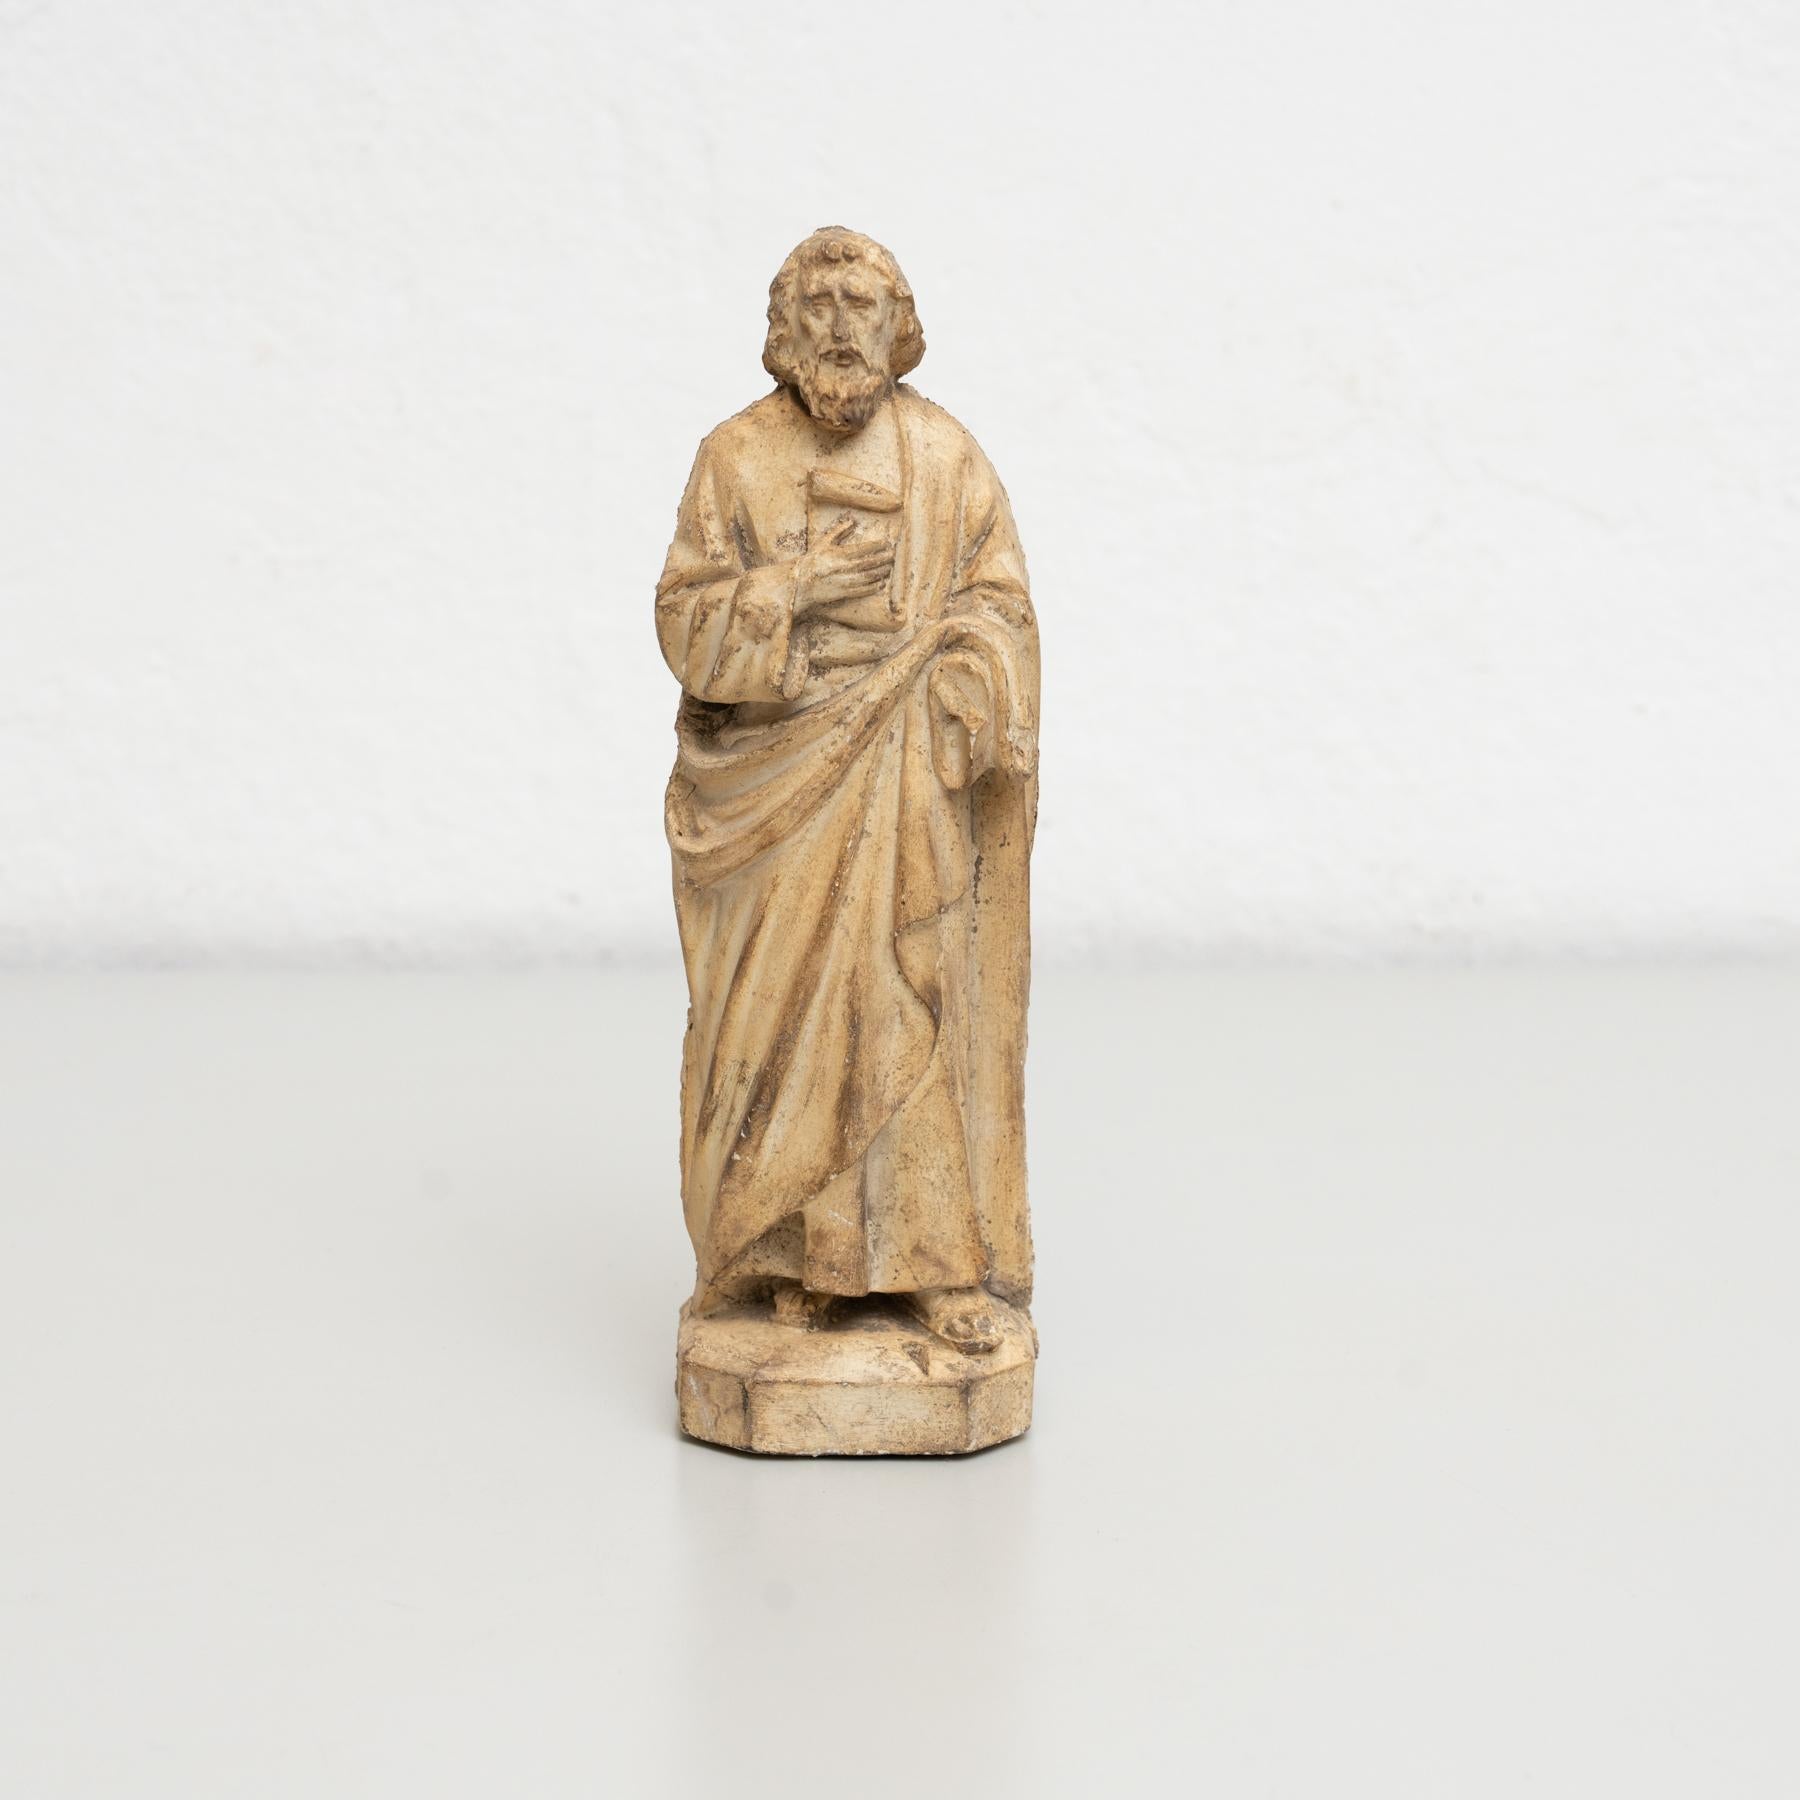 Figurine religieuse traditionnelle en plâtre représentant un saint.

Fabriqué dans un atelier catalan traditionnel à Olot, en Espagne, vers 1950.

En état d'origine, avec une usure mineure conforme à l'âge et à l'utilisation, préservant une